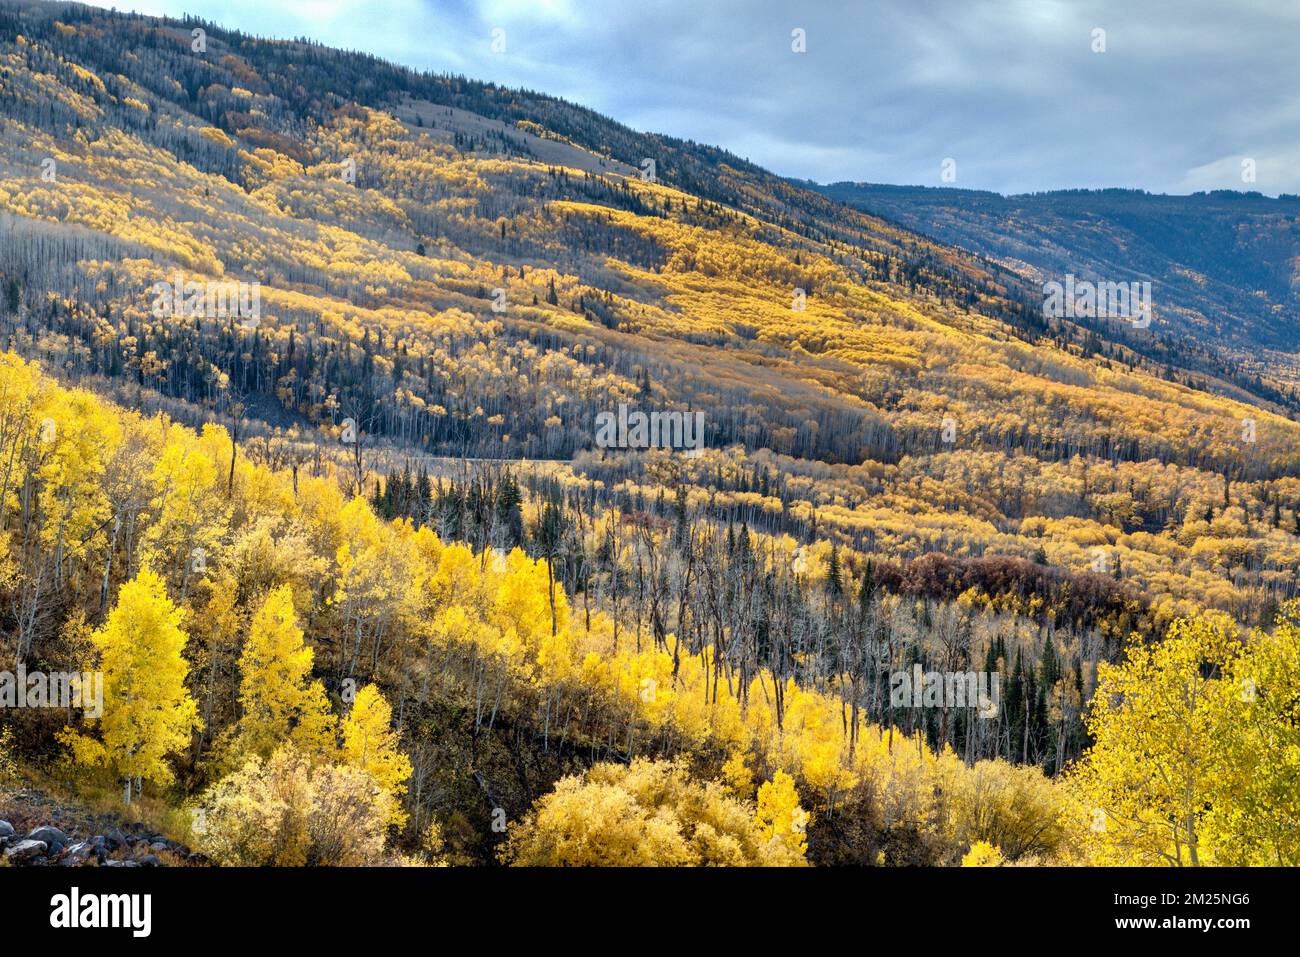 Il versante nord della montagna pianeggiante chiamata Grand Mesa in tardo autunno con una gran parte degli aspen ancora con foglie gialle. Foto Stock